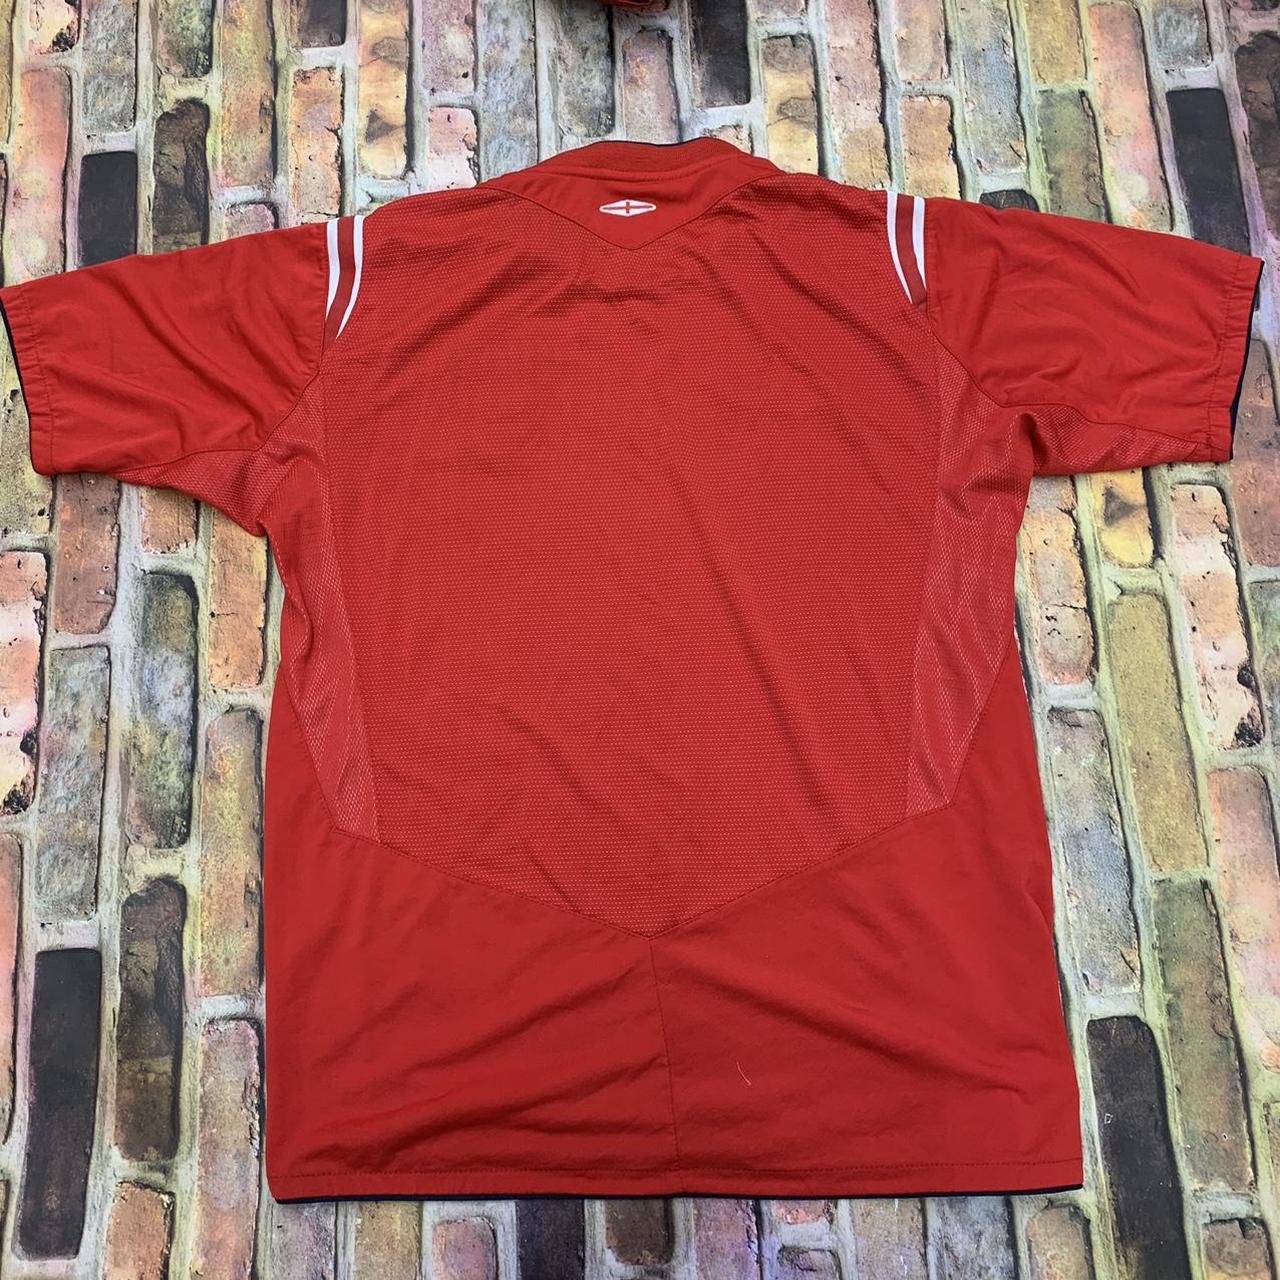 Umbro Men's Red T-shirt | Depop